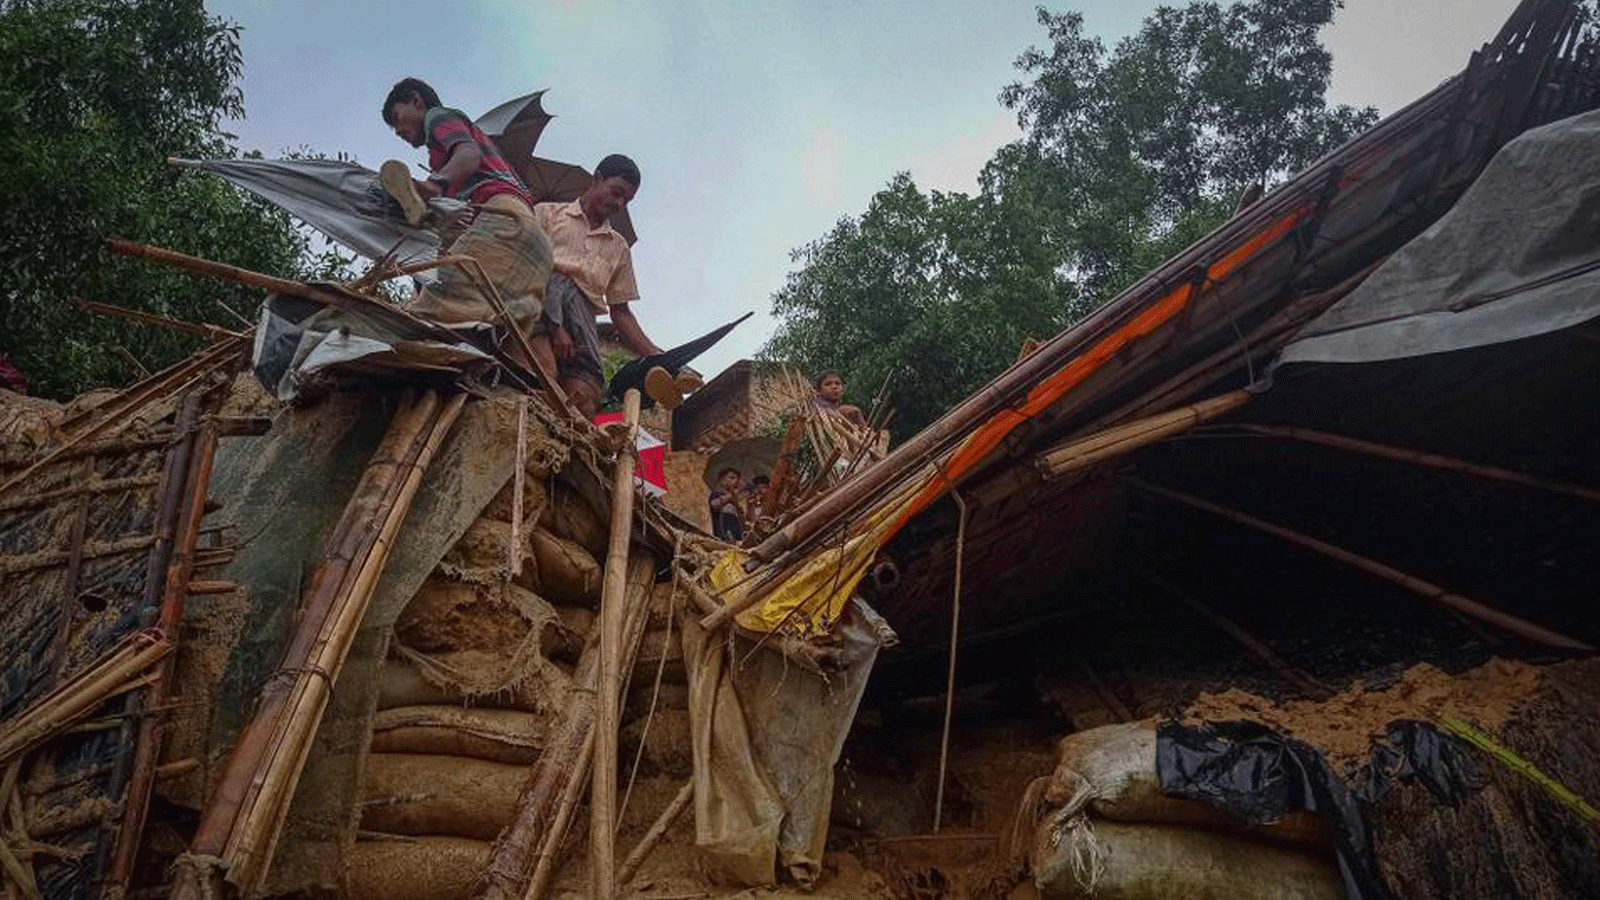 لاجئون من الروهينغا يعملون وسط حطام منزل في مخيم بالوخالي في بنغلاديش في 27 يوليو/ تموز 2021